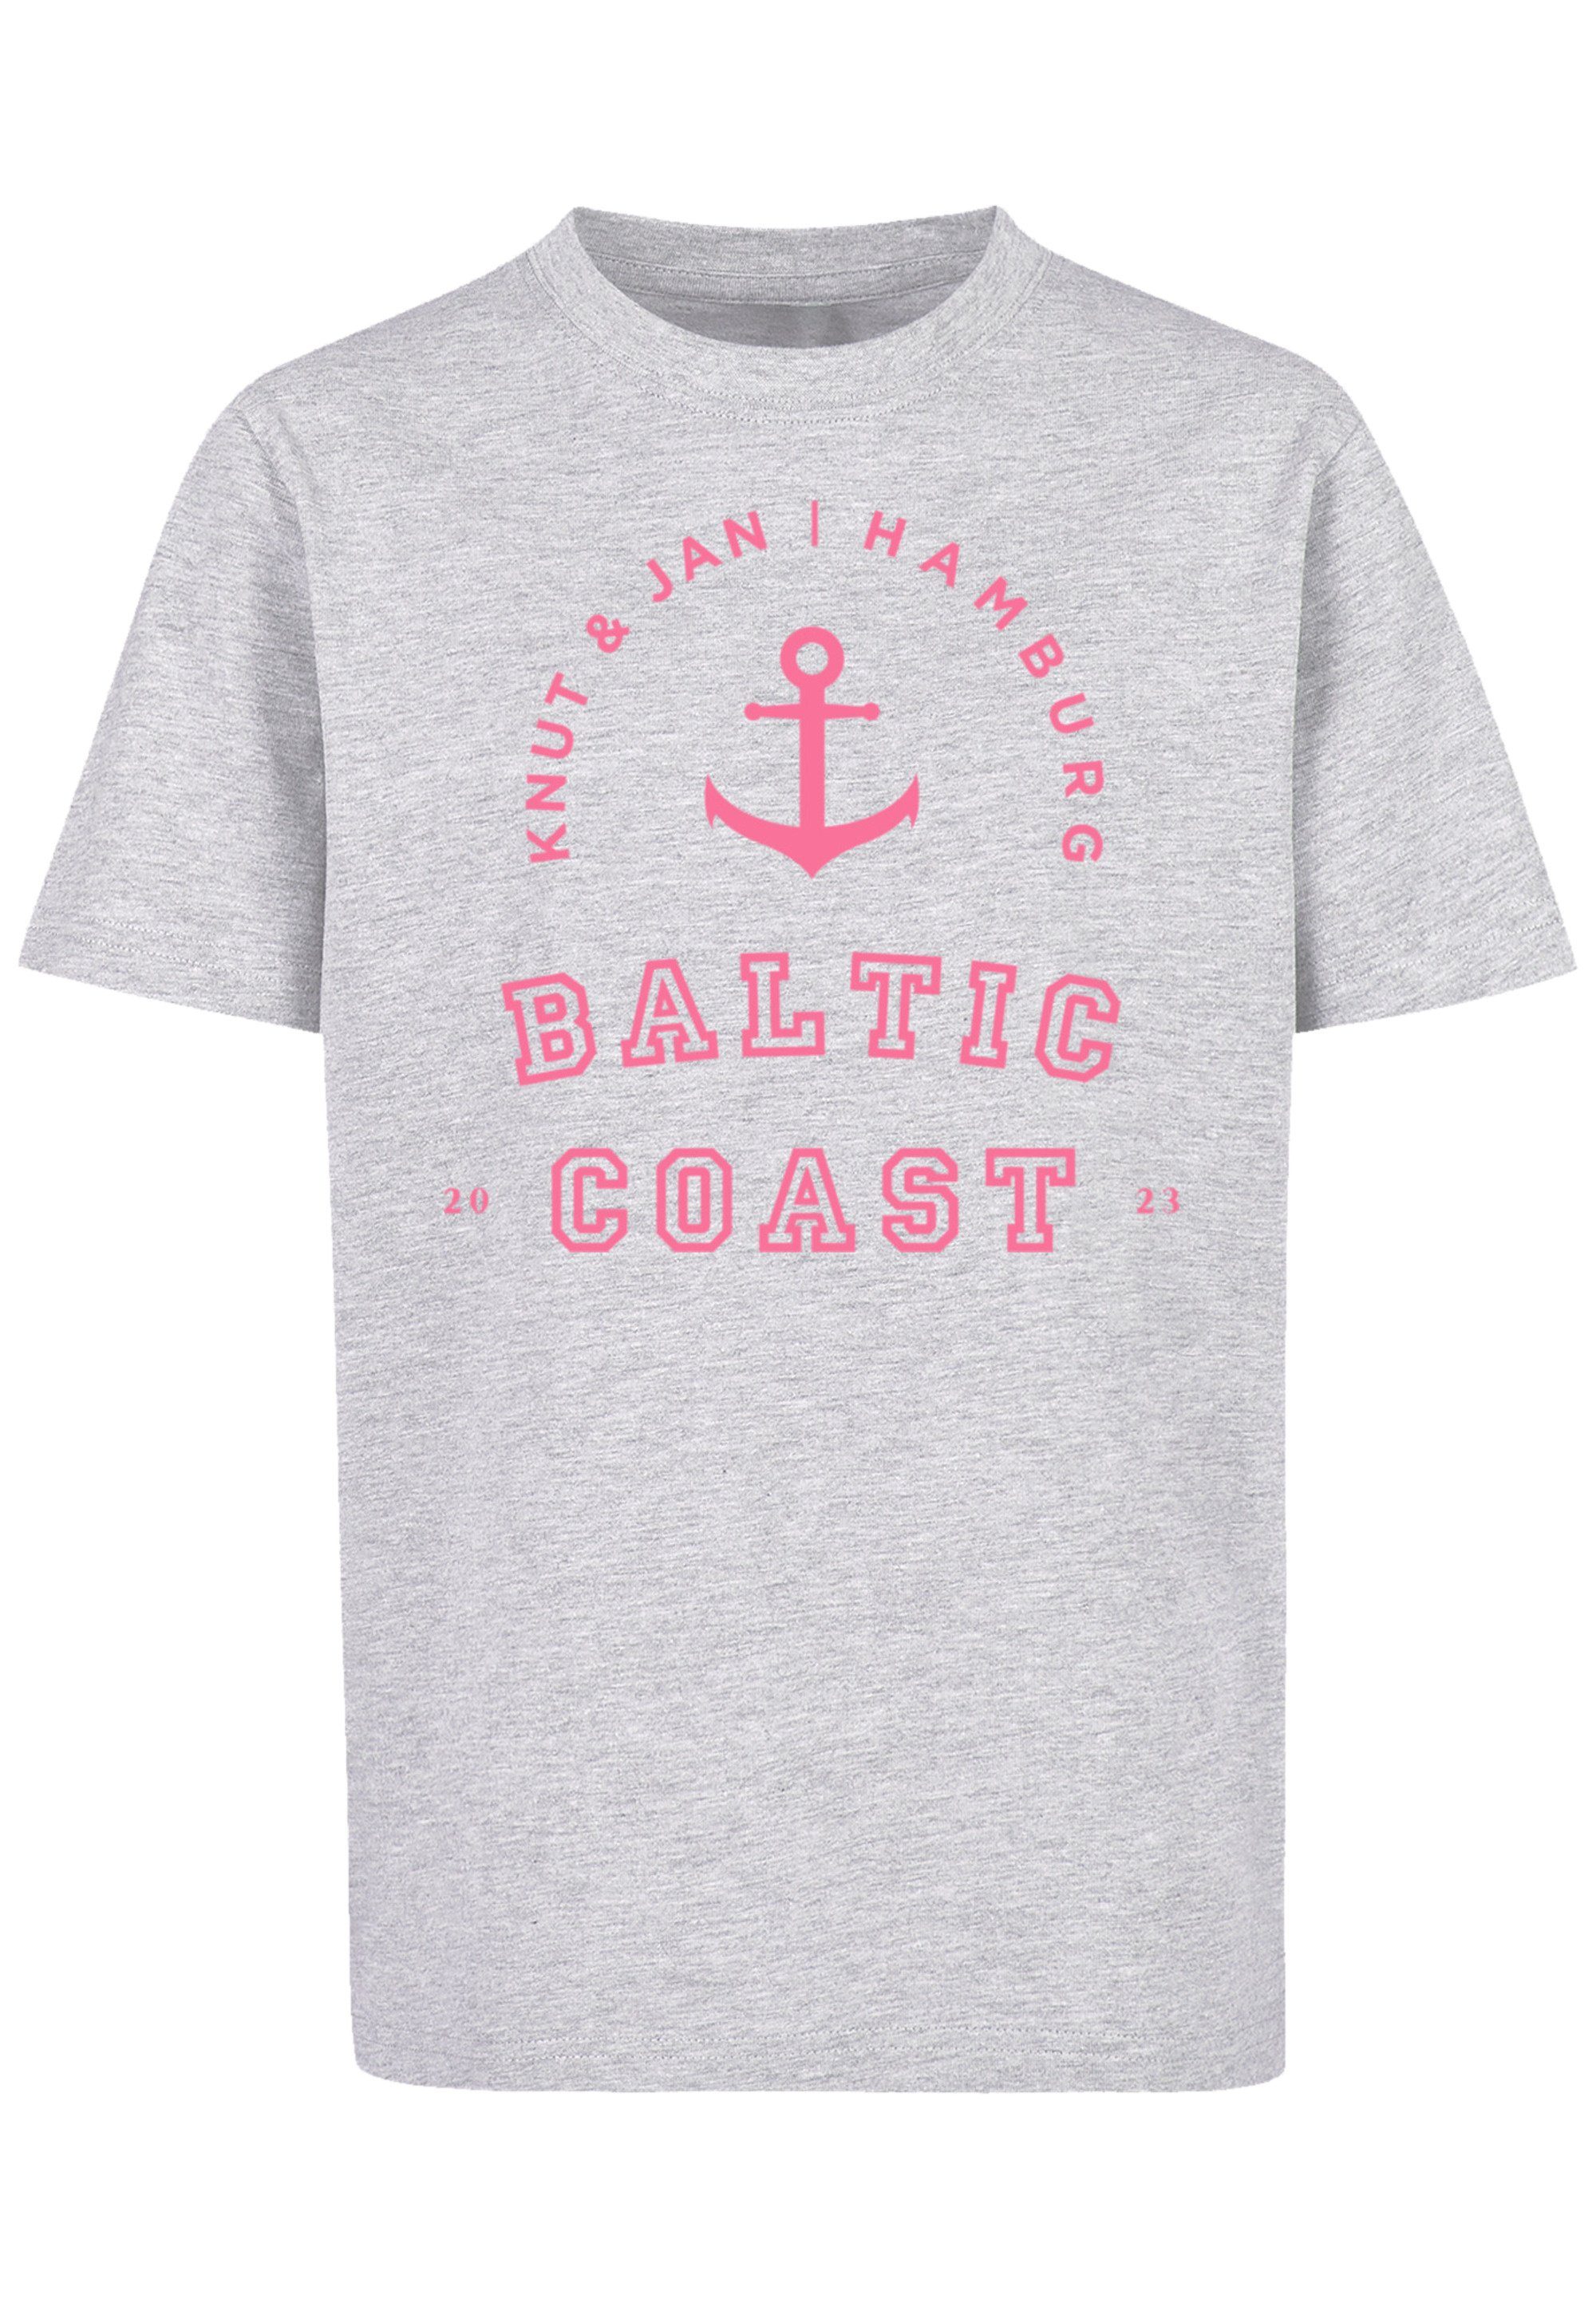 Jan heather Print grey T-Shirt Knut Hamburg & F4NT4STIC Baltic Coast